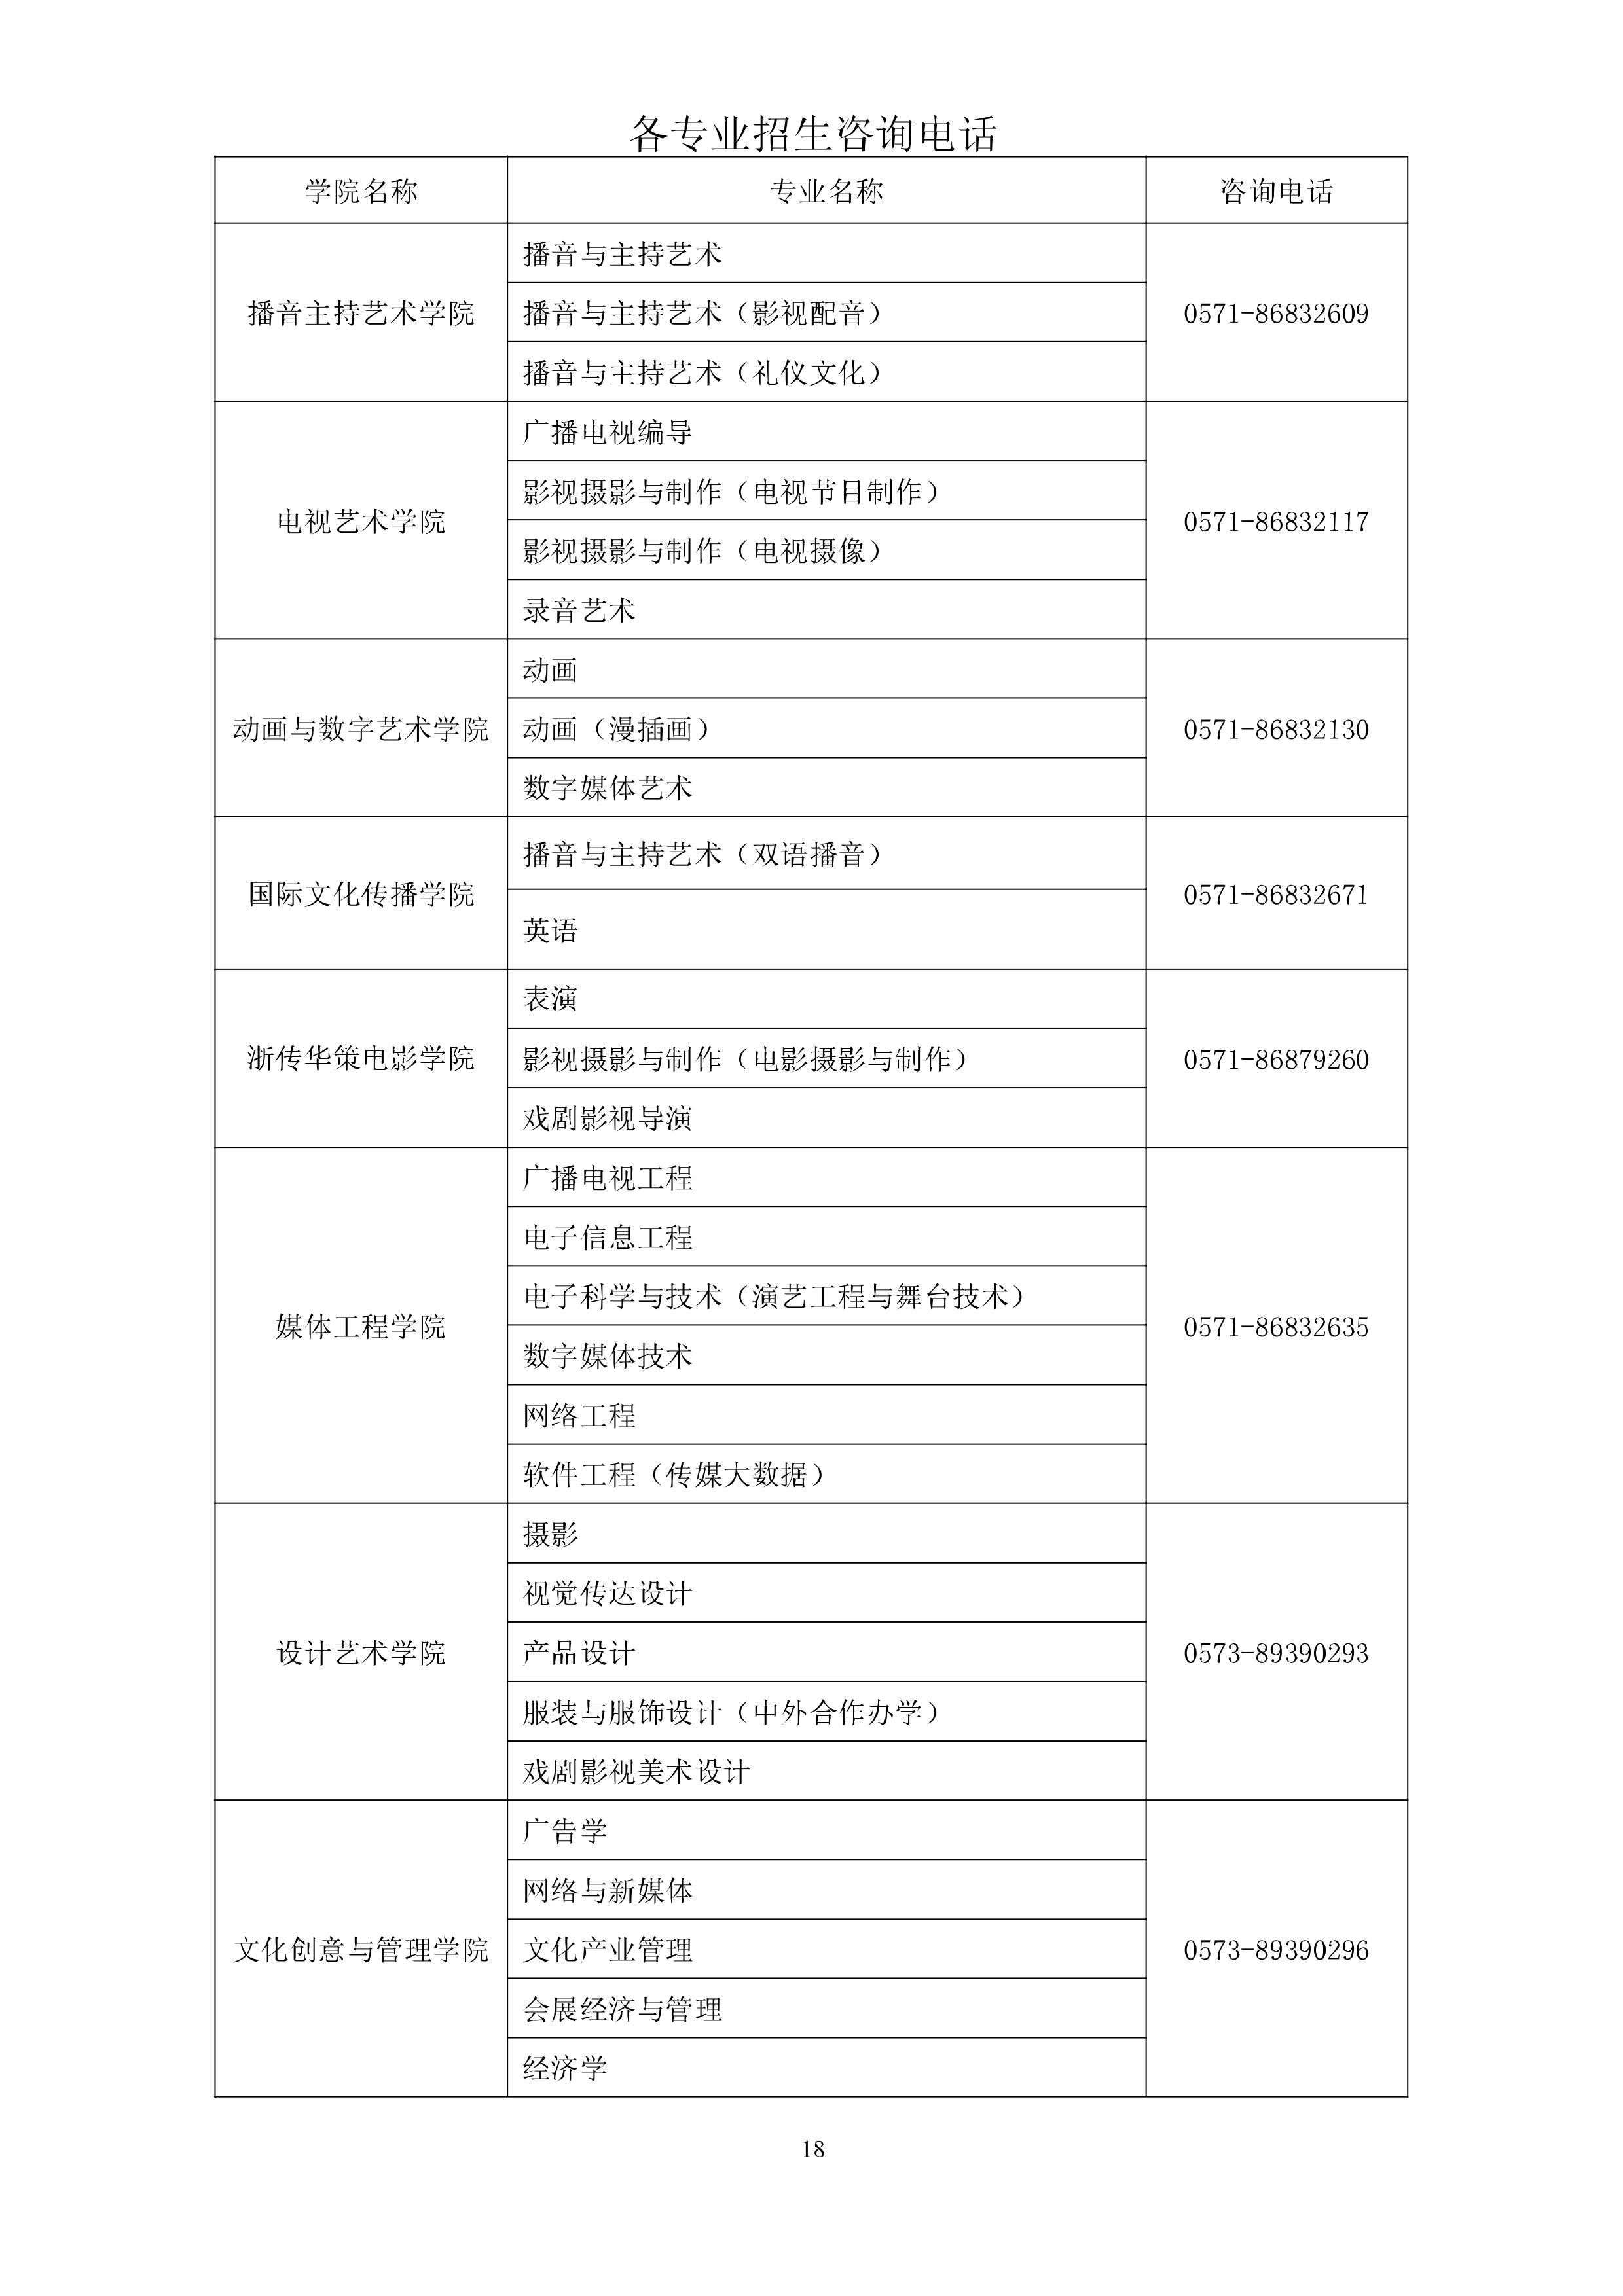 18浙江传媒学院2020年招生简章-浙江传媒学院招生网.jpg